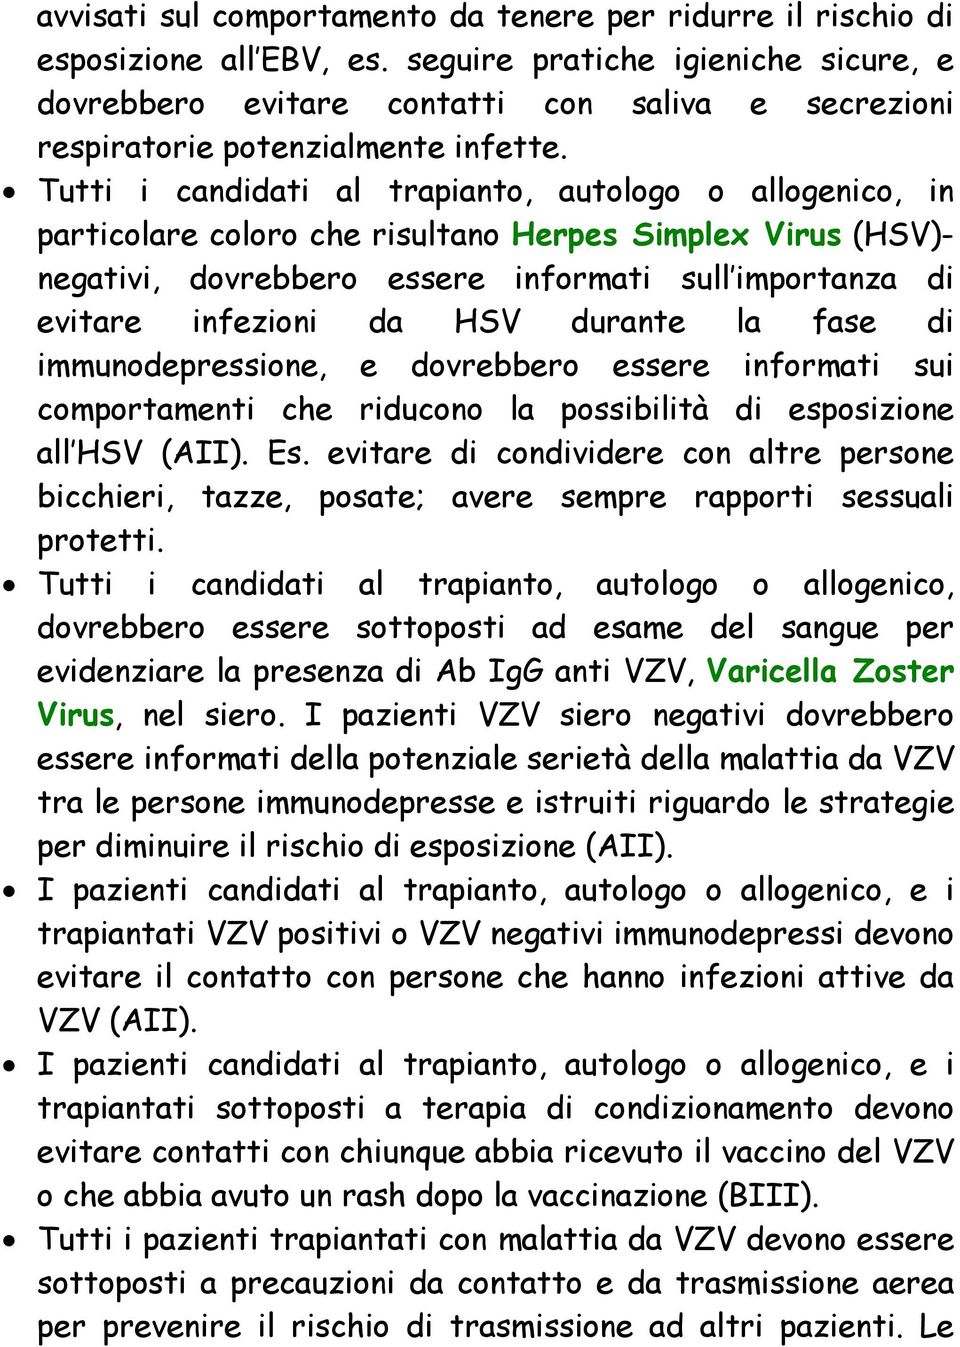 Tutti i candidati al trapianto, autologo o allogenico, in particolare coloro che risultano Herpes Simplex Virus (HSV)- negativi, dovrebbero essere informati sull importanza di evitare infezioni da